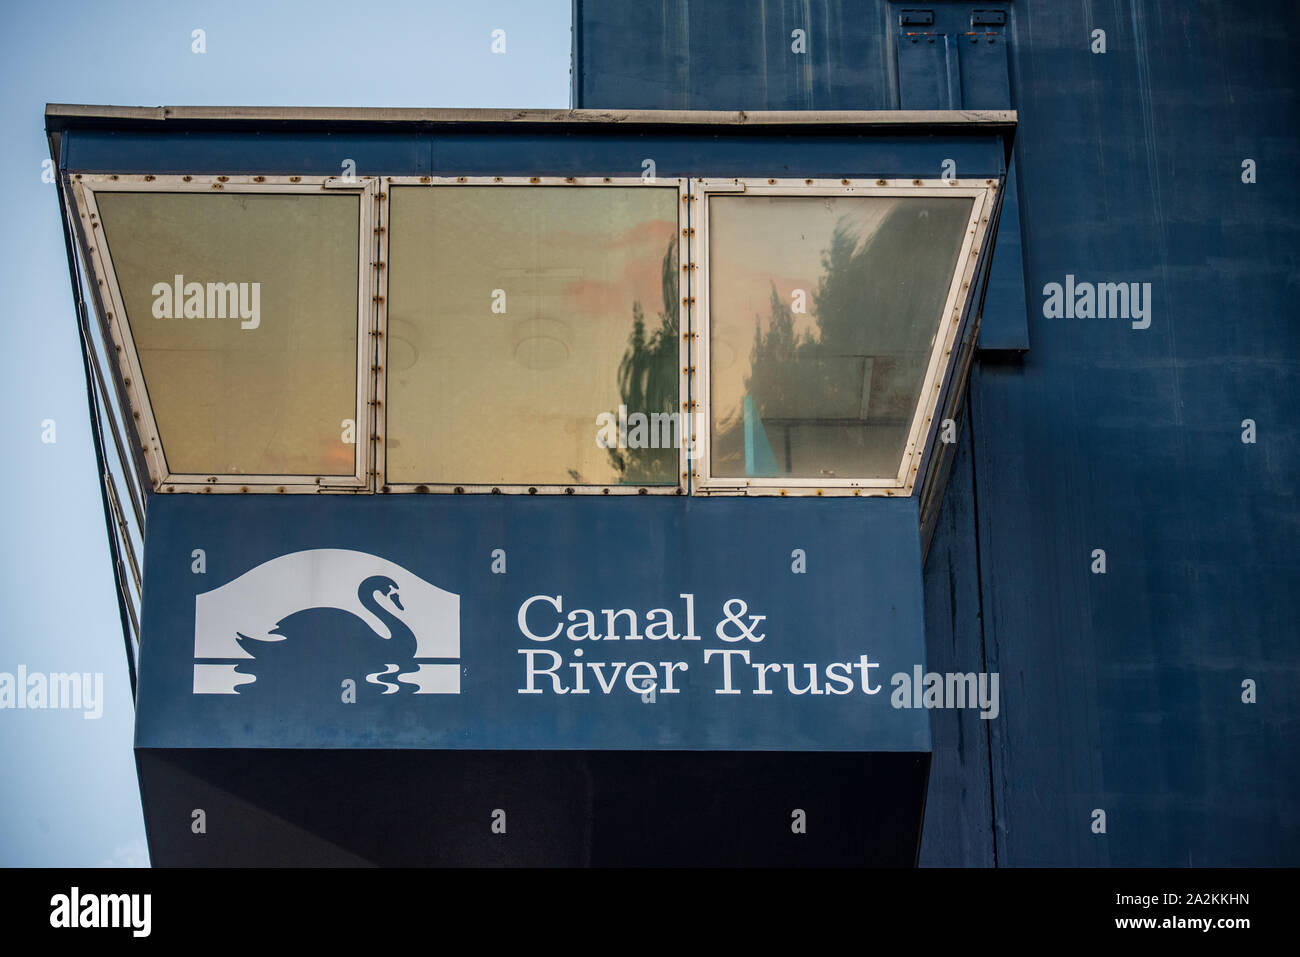 Canal & River Trust - Canal & Rivers Trust cabine de contrôle sur le pont-levis pont bleu sur Isle of Dogs nr Canary Wharf. Entrée de West India Dock. Banque D'Images